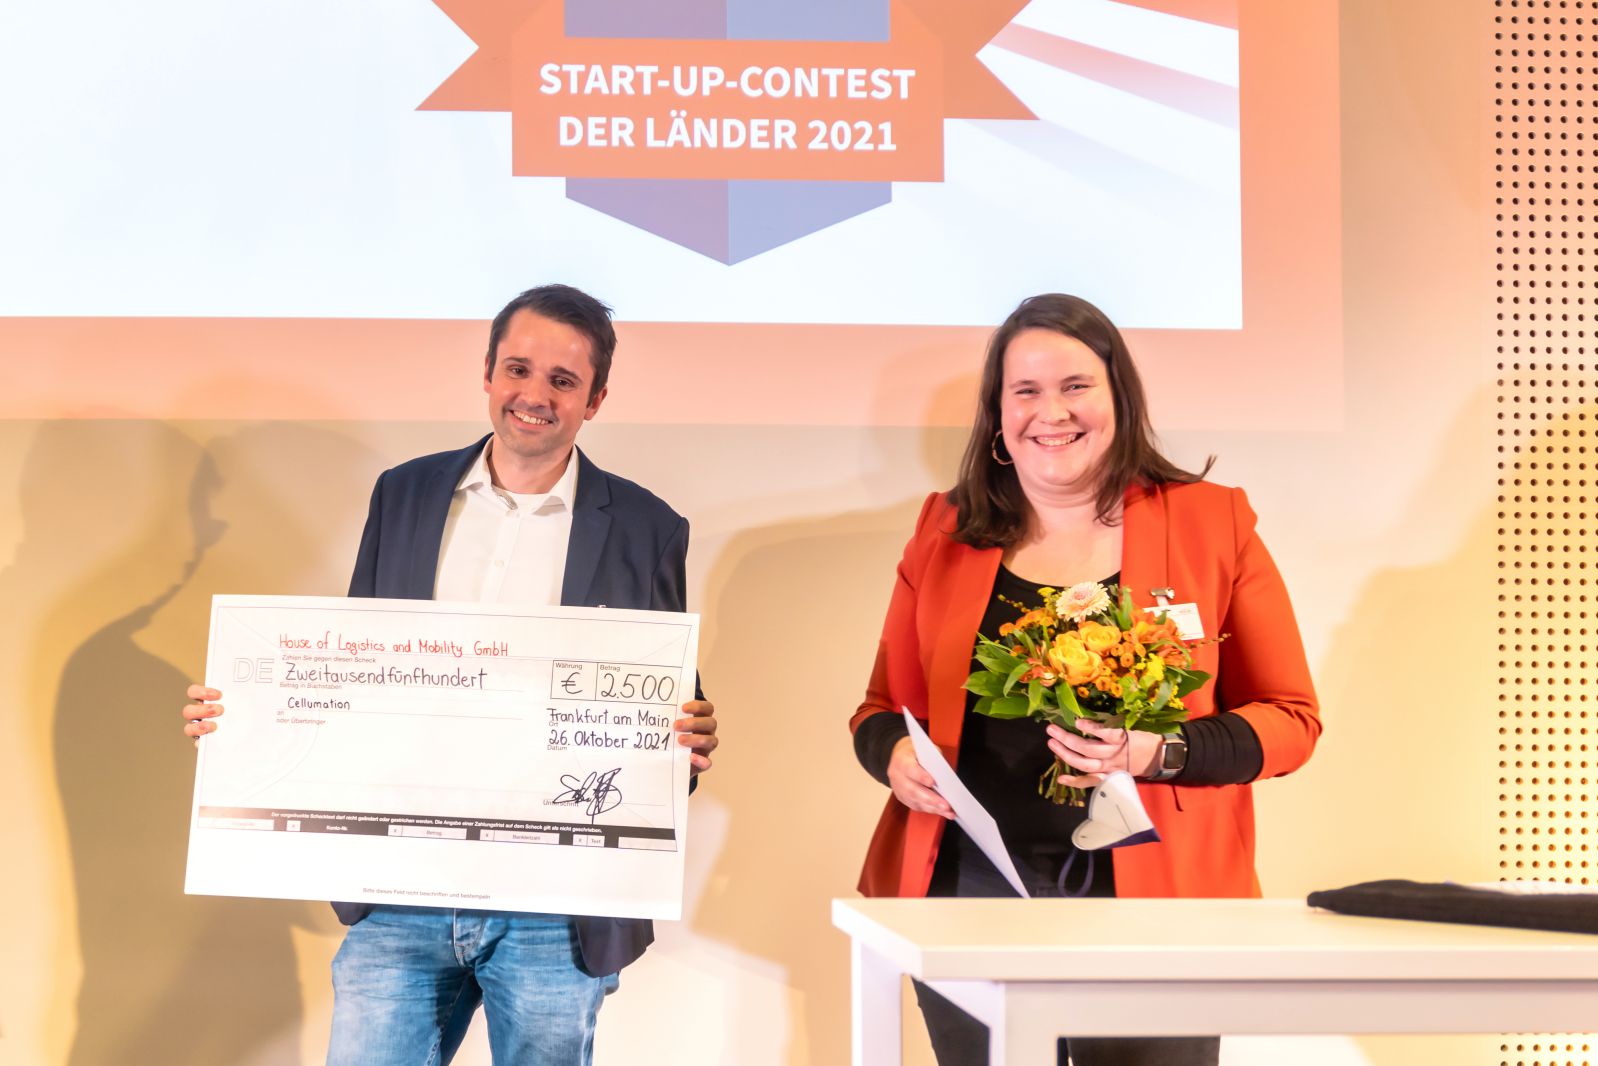 Die cellumation GmbH aus Bremen gewinnt Start-up-Contest der Länder 2021